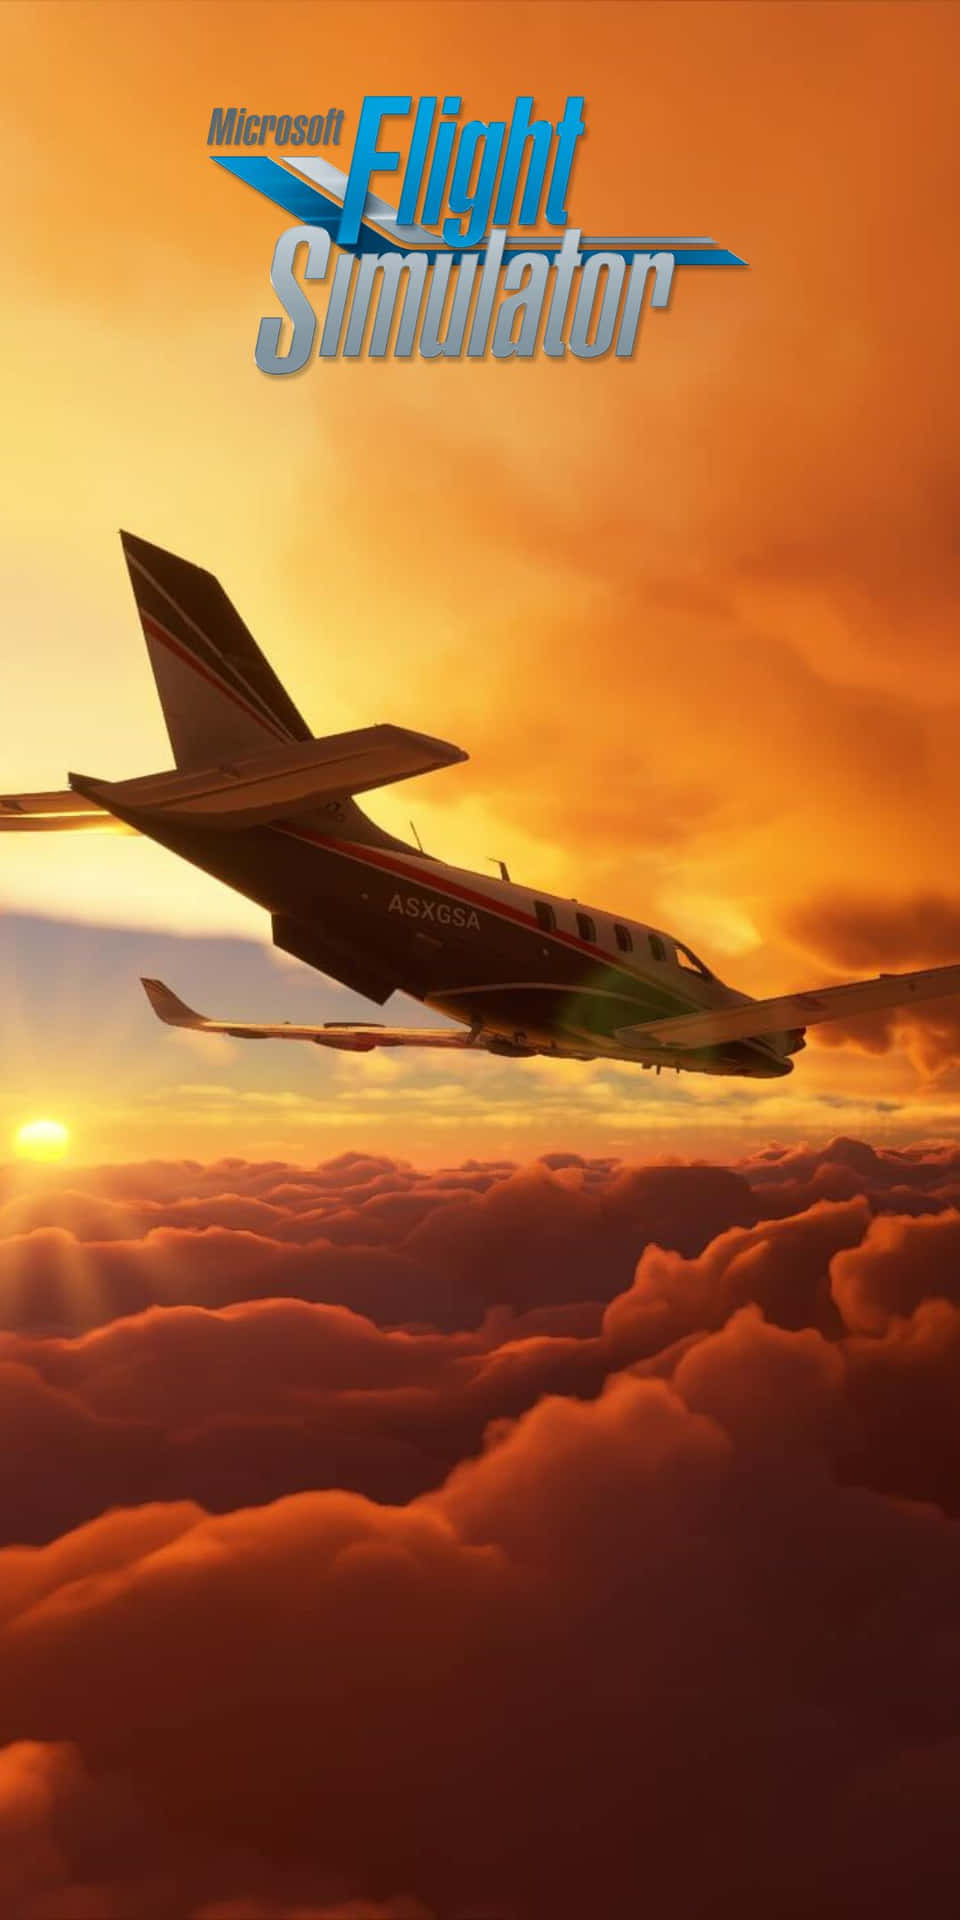 Portala Tua Esperienza Di Volo A Nuove Vette Con Il Pixel 3 E Microsoft Flight Simulator.